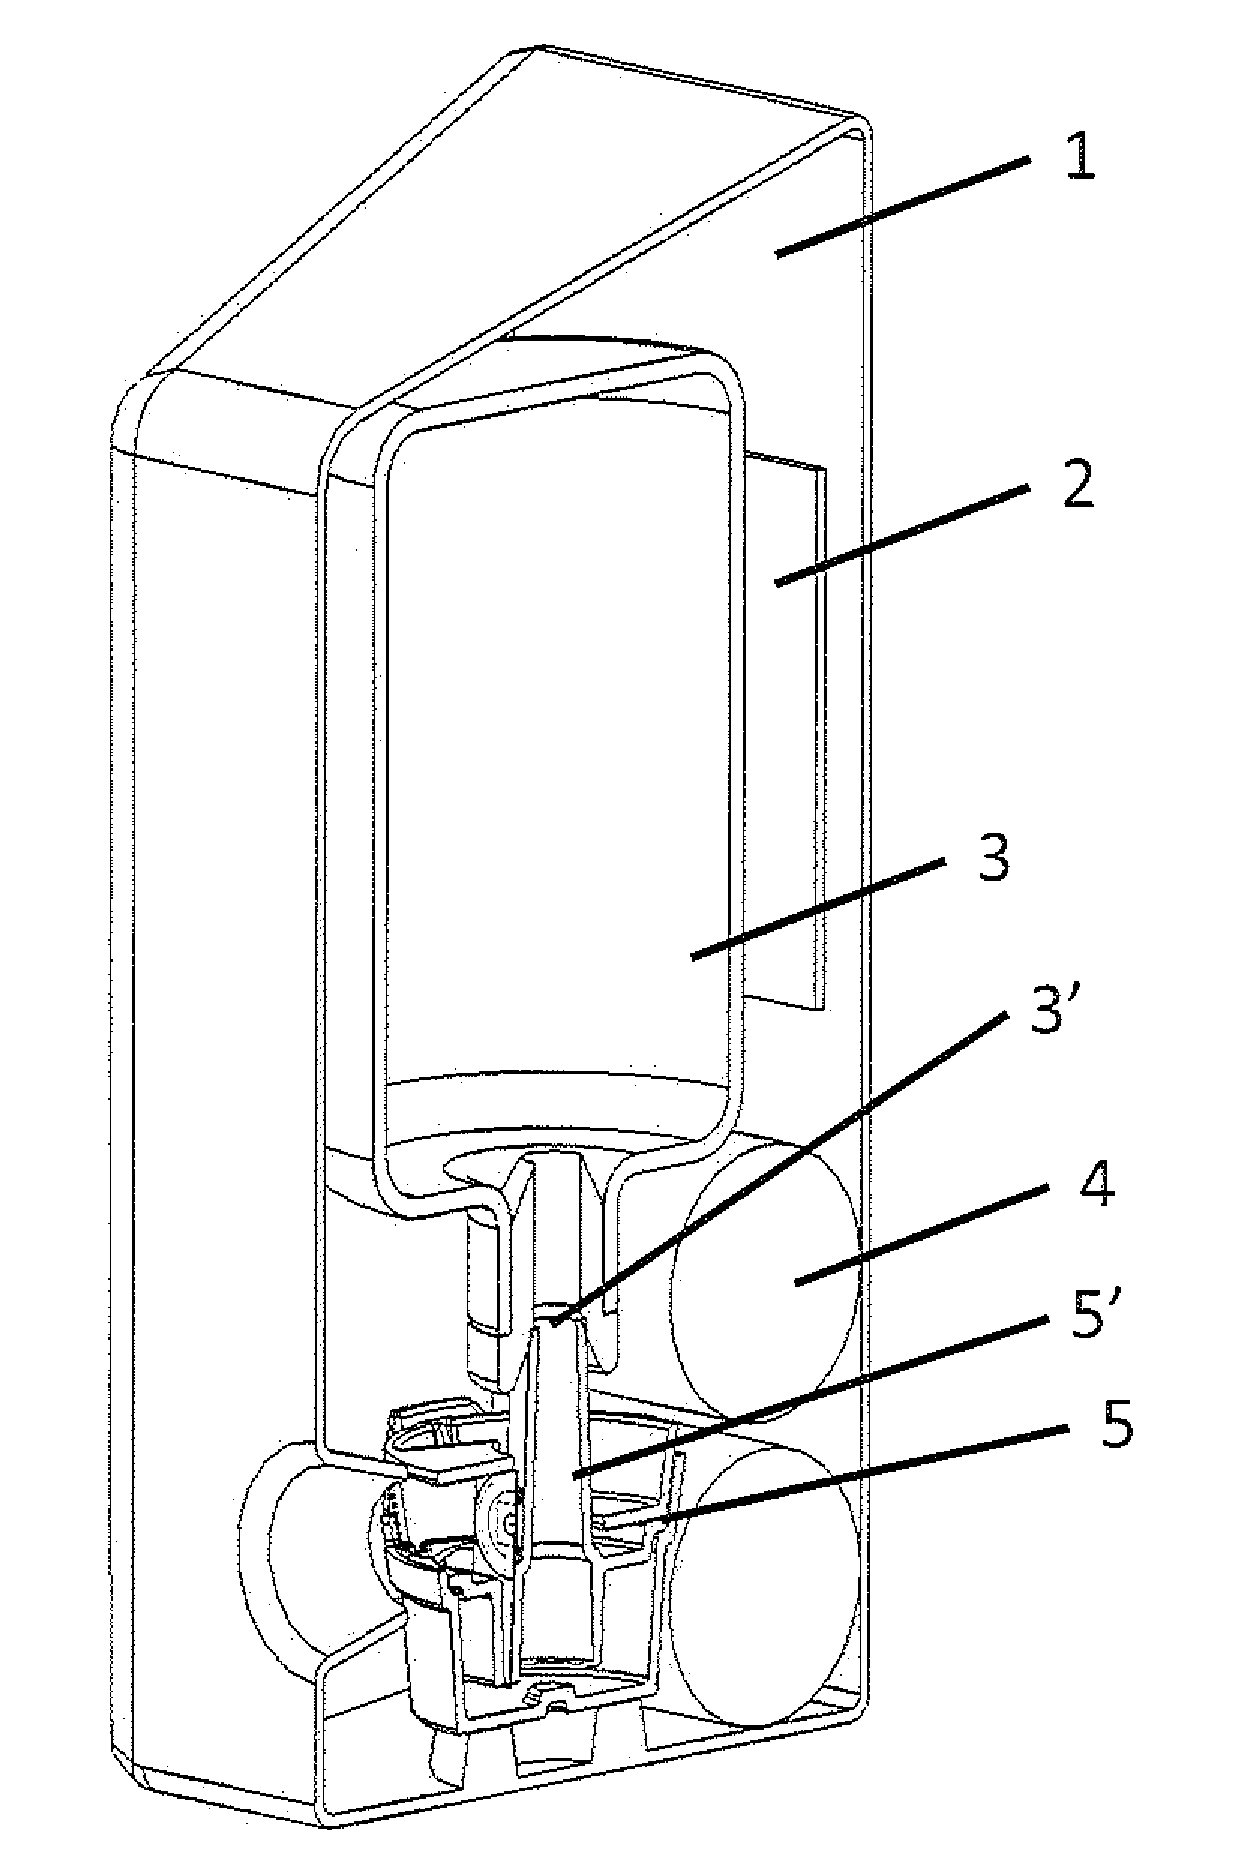 Liquid dispensing apparatus using a passive liquid metering method